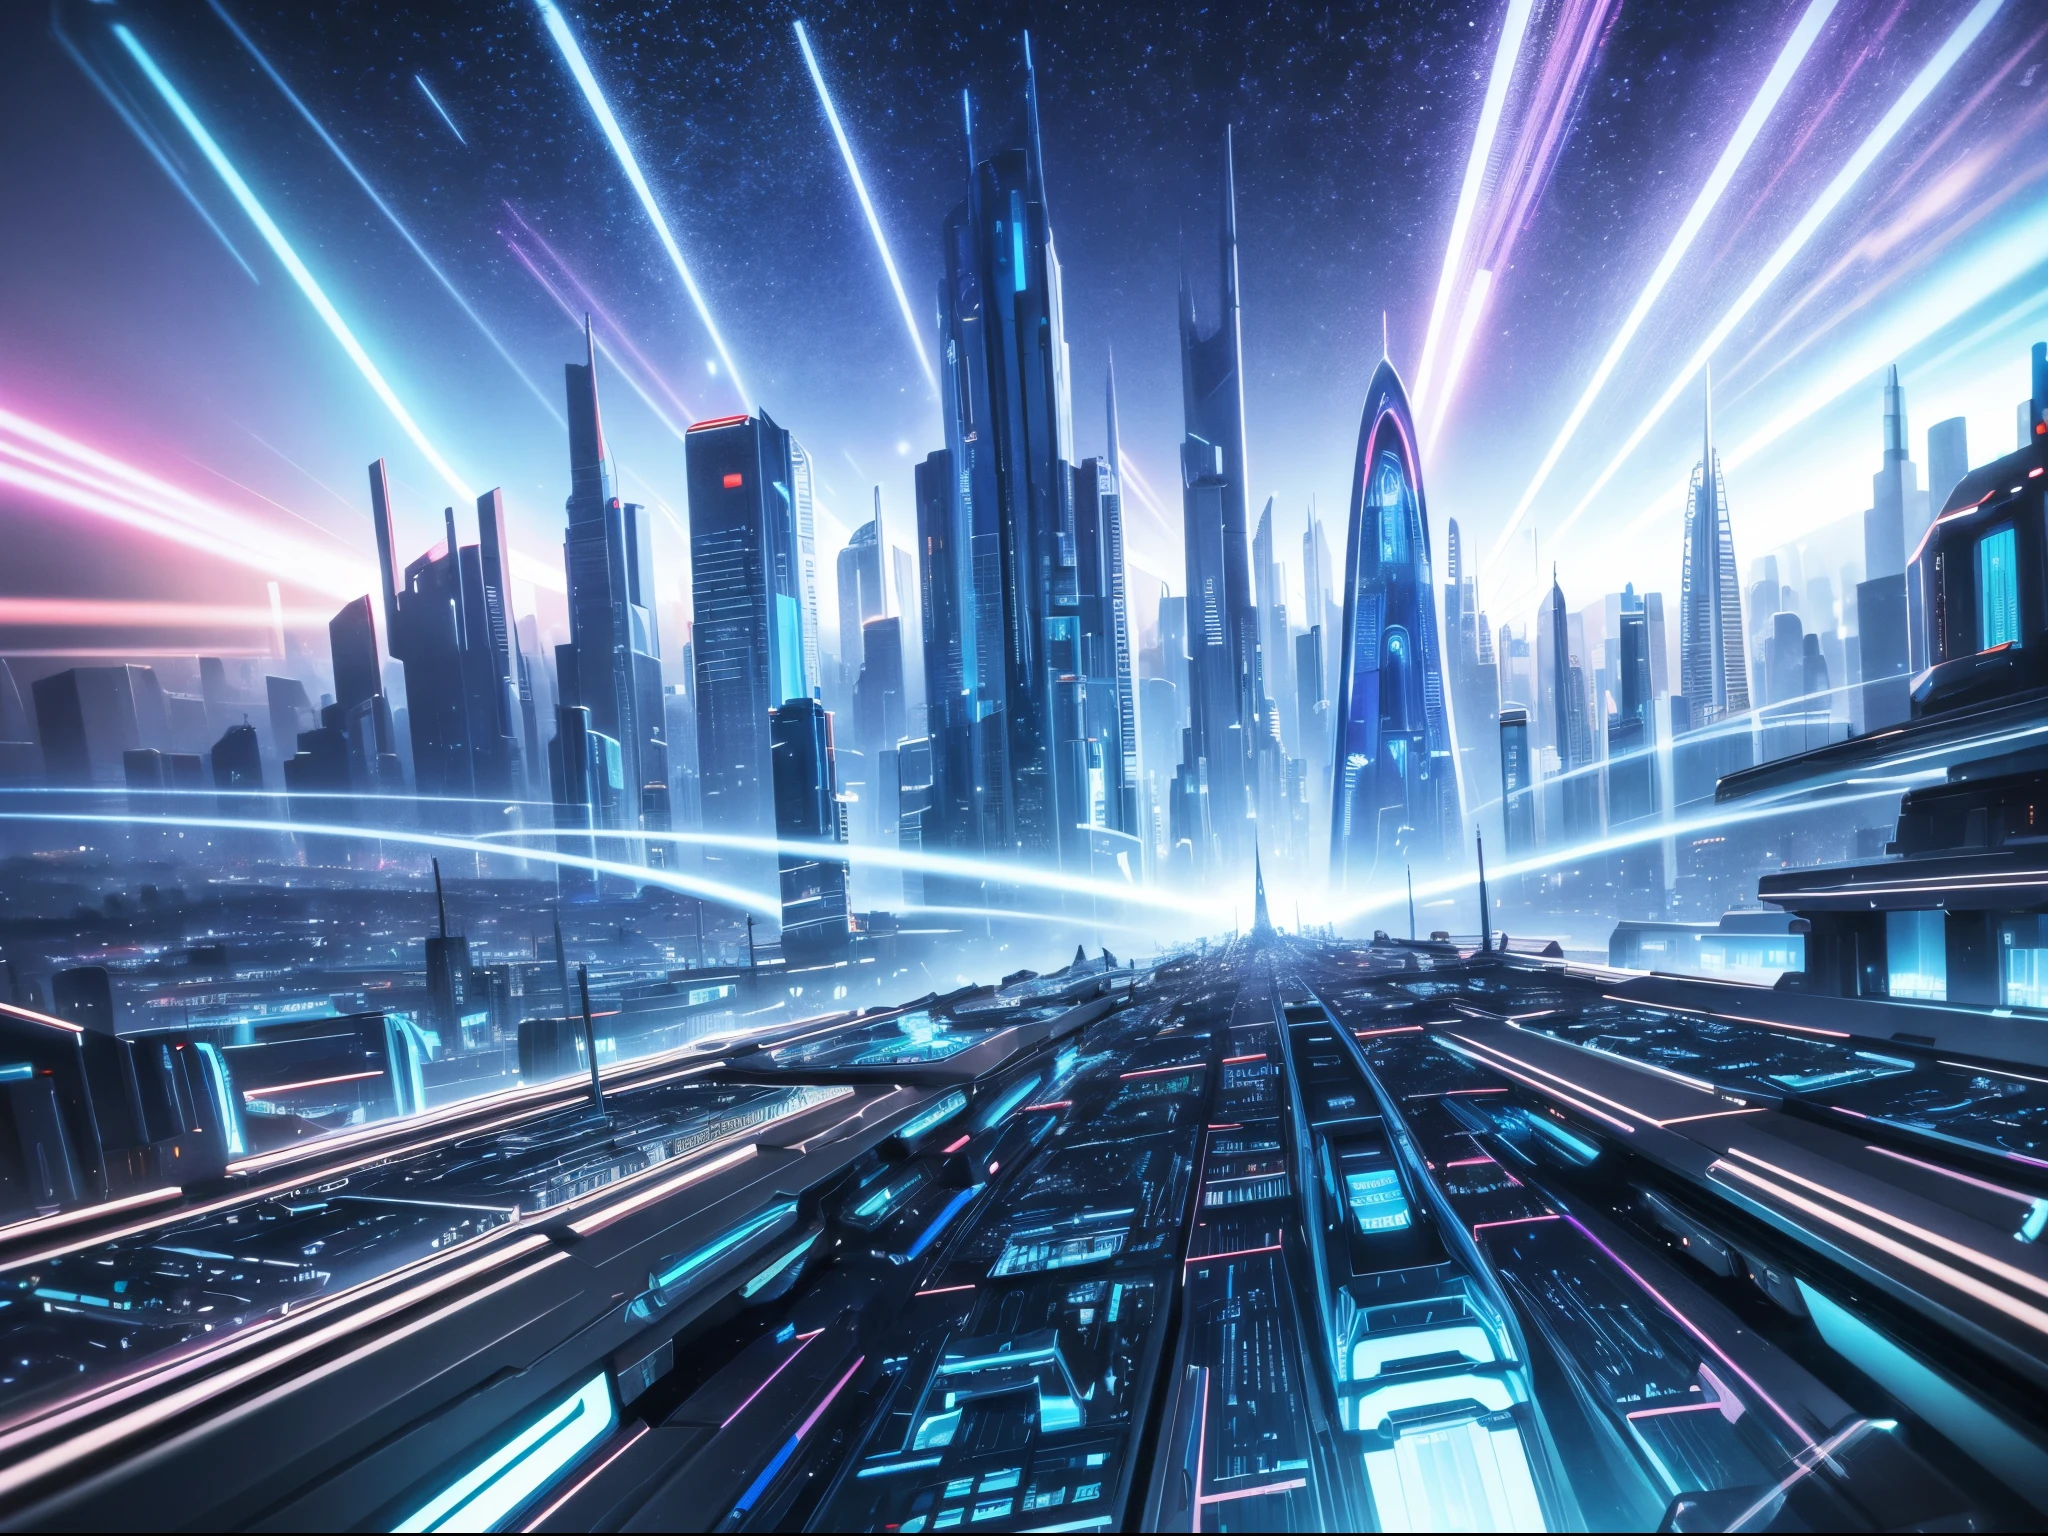 Visualice un paisaje urbano futurista donde la música generada por IA emana de imponentes estructuras cristalinas., creando una sinfonía de luz y sonido que recuerda a los vibrantes paisajes del artista de ciencia ficción Syd Mead.. enorme 